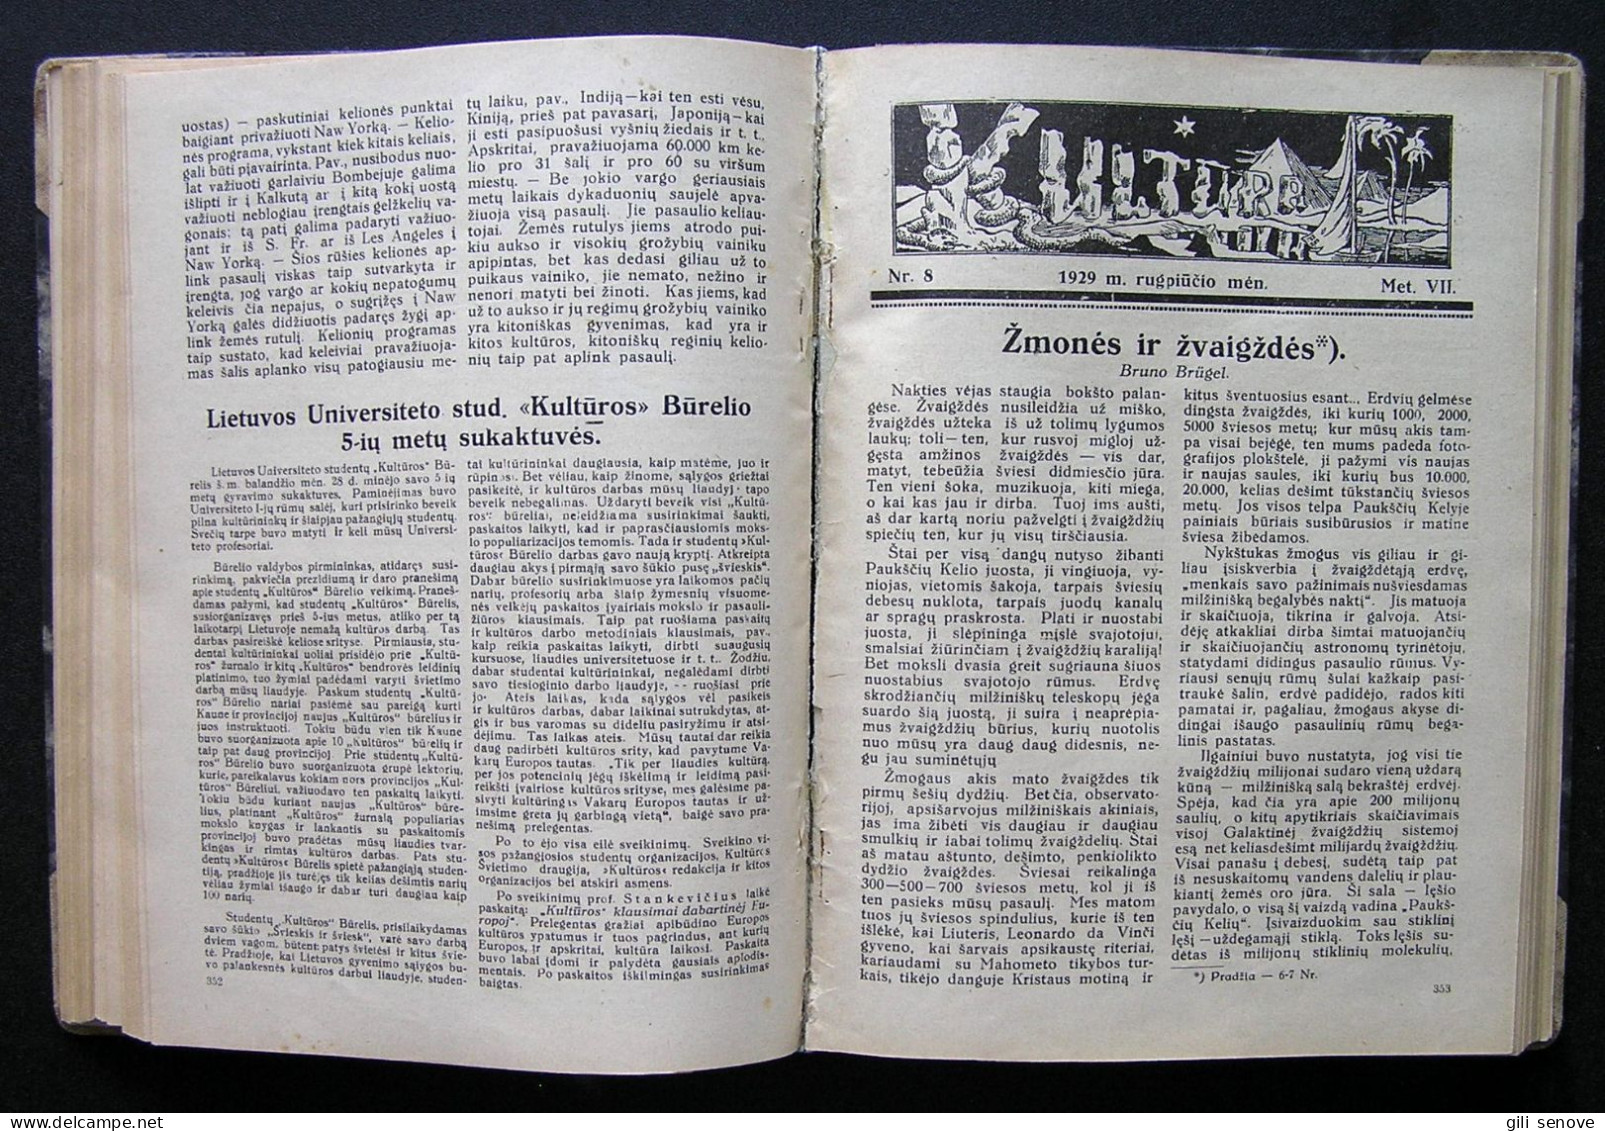 Lithuanian Magazine / Kultūra 1929 Complete